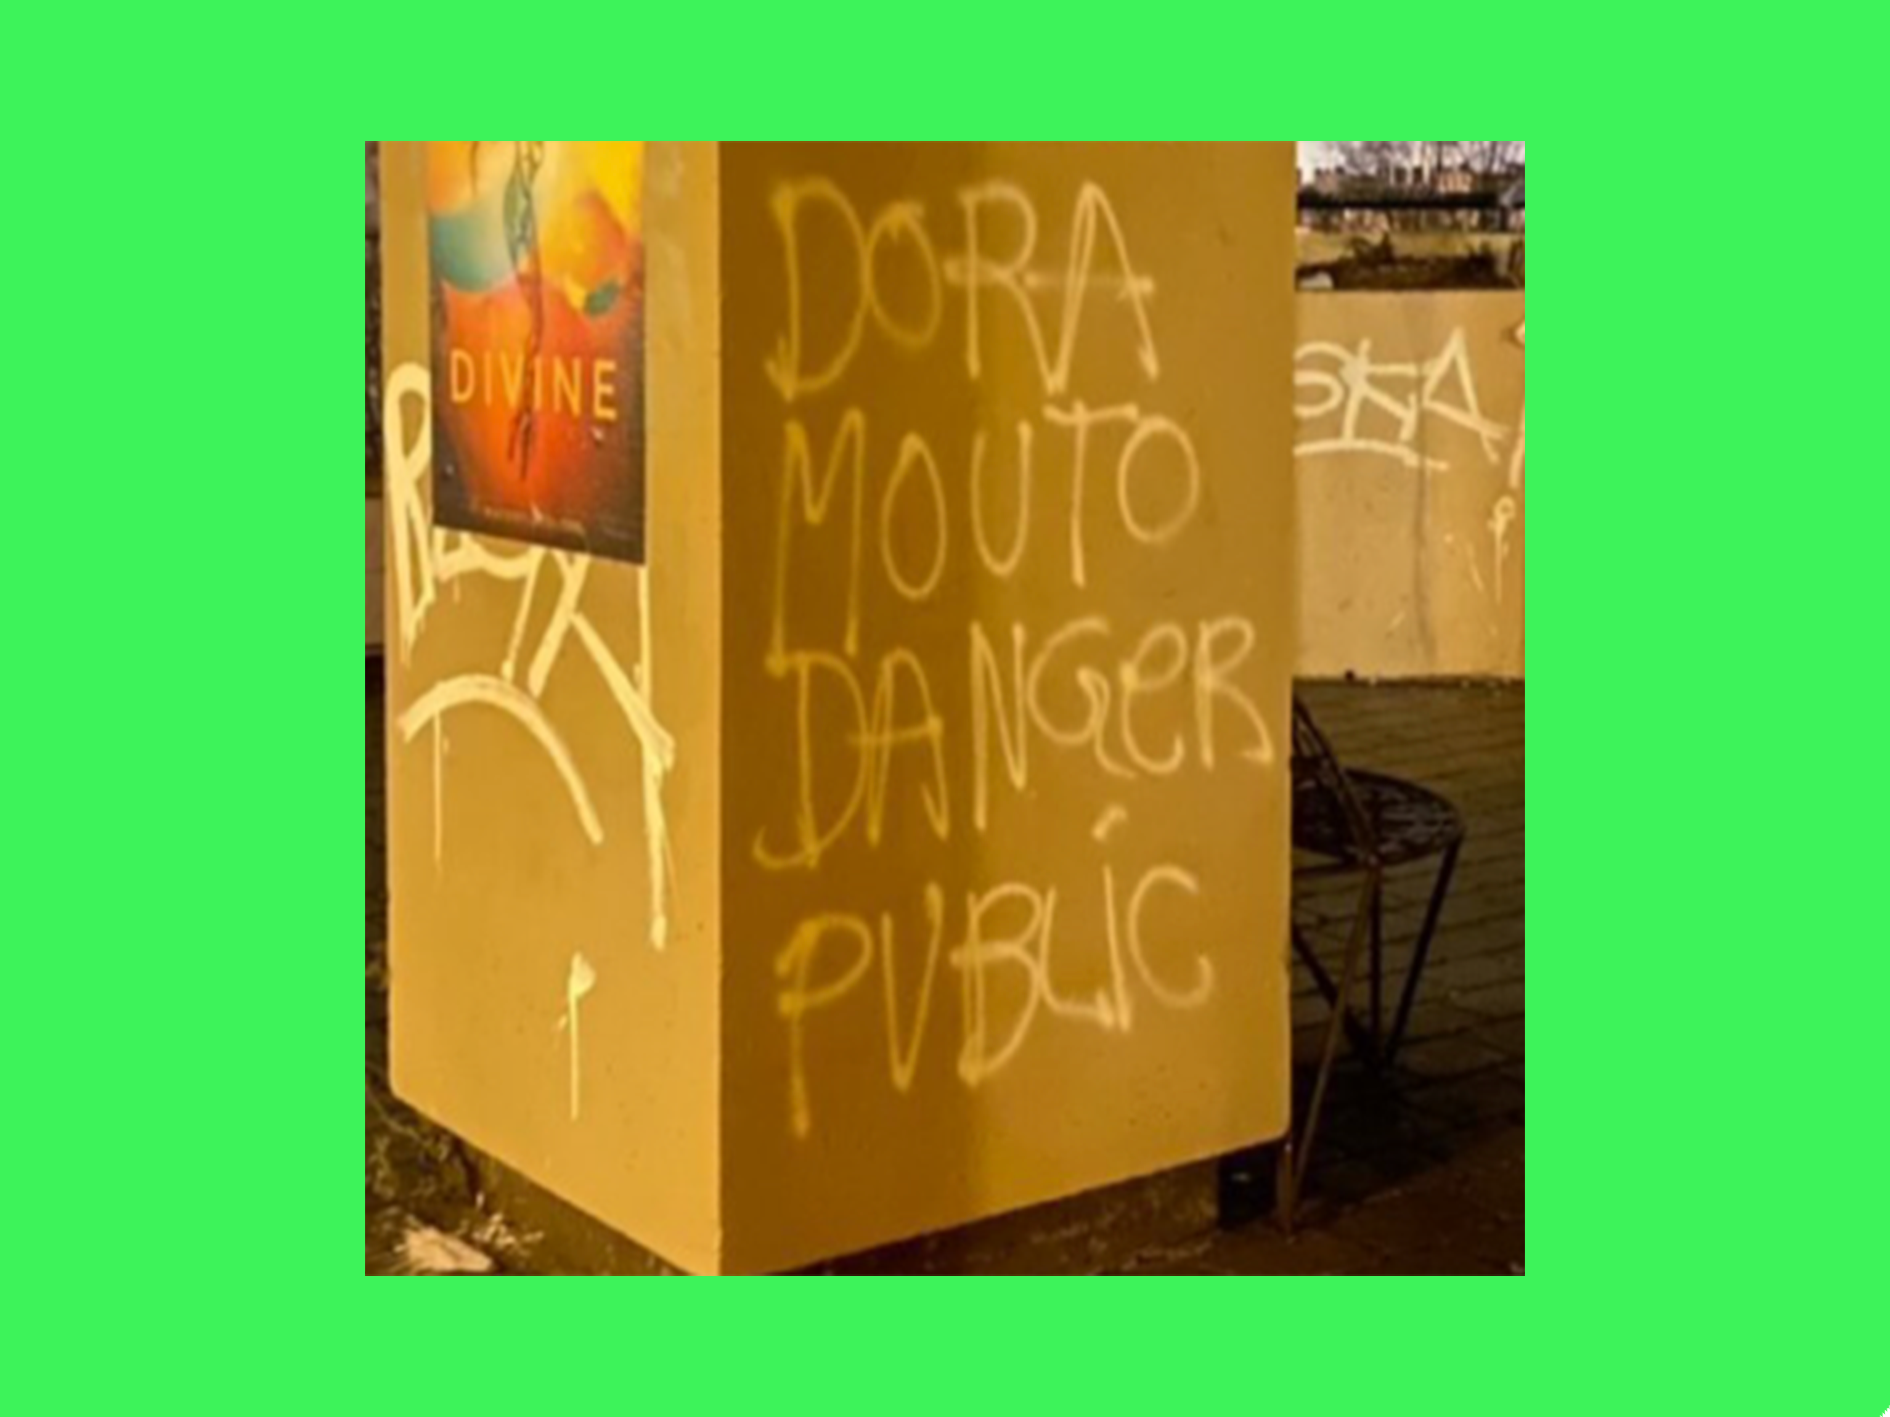 Les messages violents dans l’espace public (graffitis et pancartes)